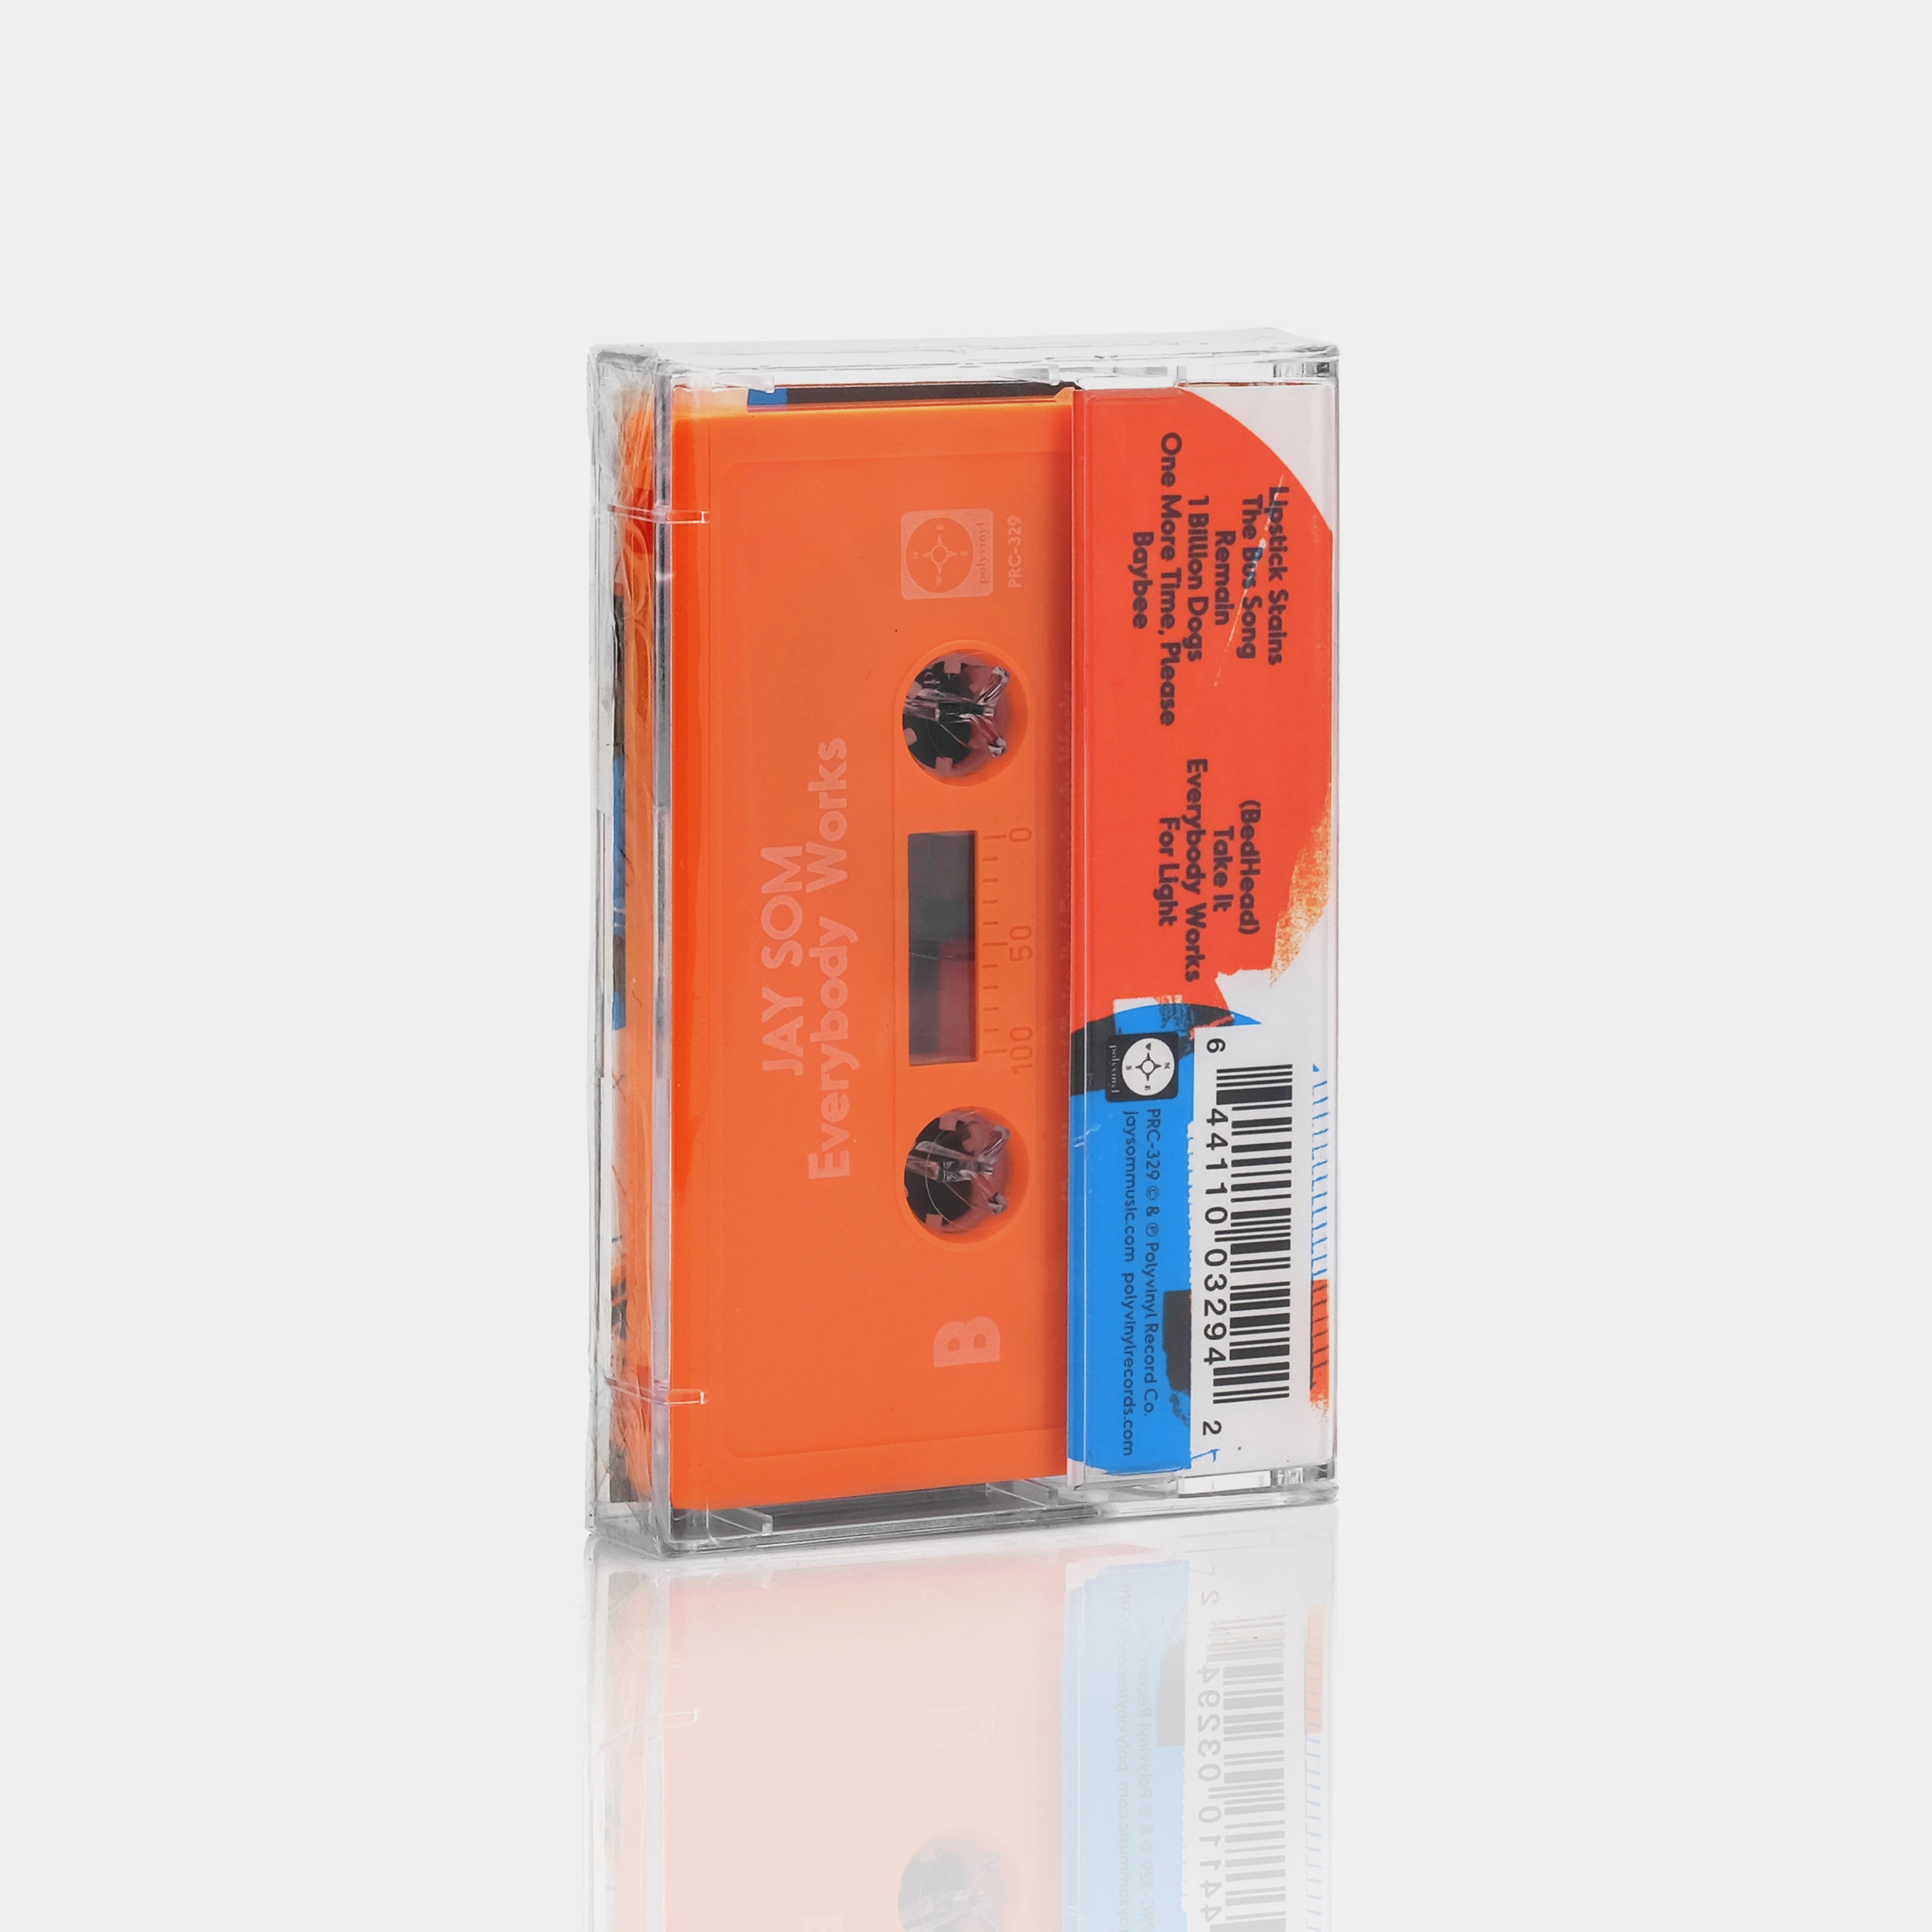 Jay Som - Everybody Works Cassette Tape